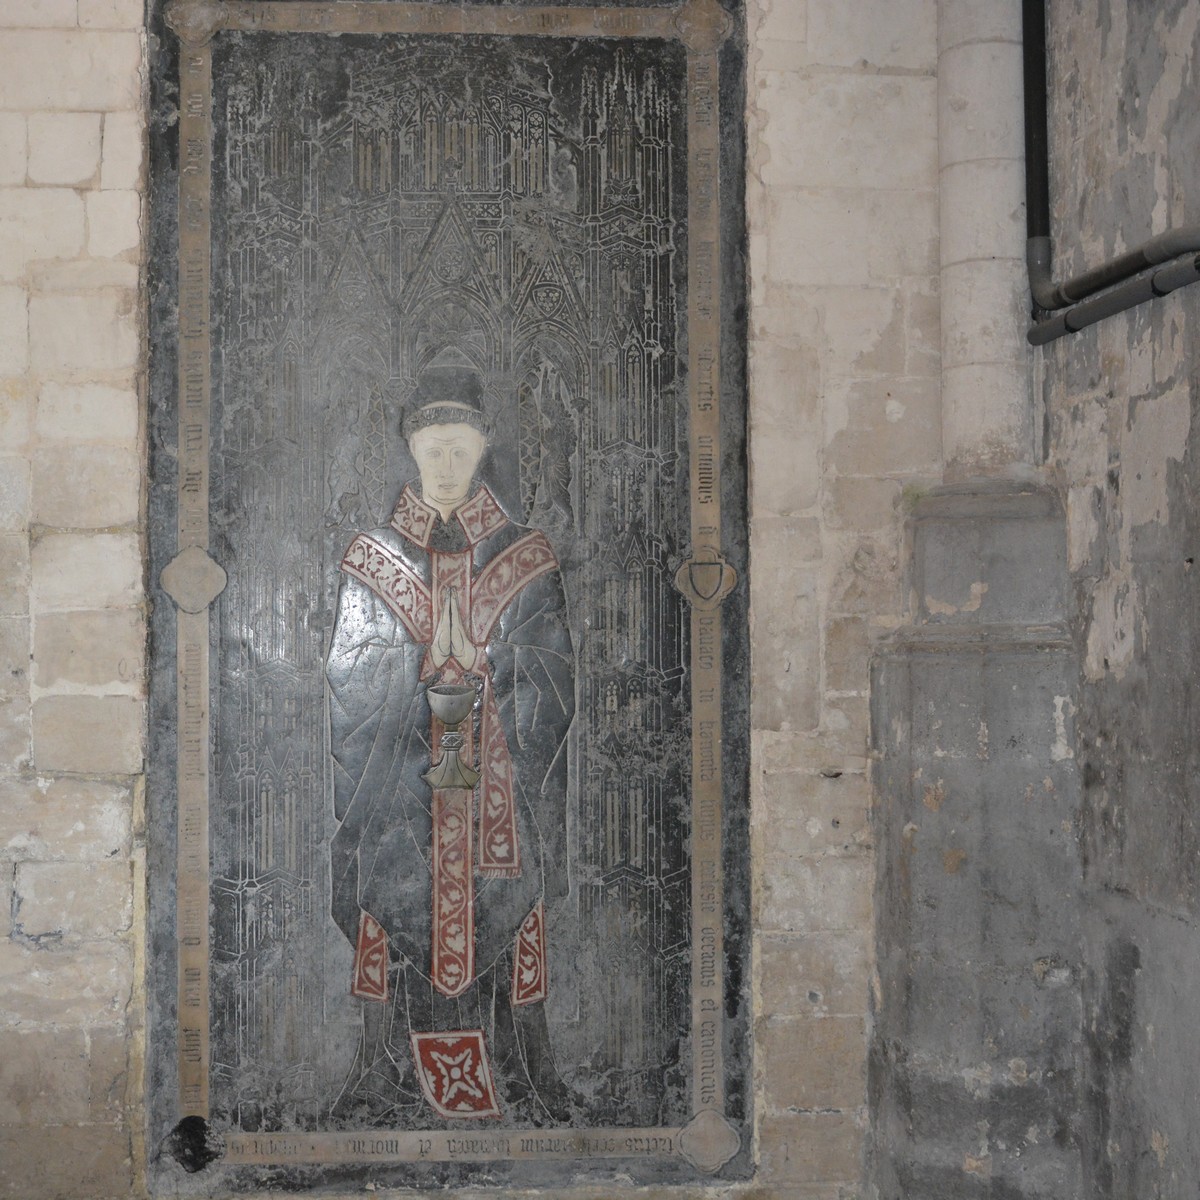 Cathédrale de Saint-Omer  -  Sur le côté et encastrée dans la muraille, on voit une merveilleuse pierre tombale sur laquelle est gravée un riche portique gothique. Elle porte des incrustations de marbre blanc, de cuivre et d'une pierre jaunâtre relevée de vermillon. 
Aux quatre angles se trouvent les symboles des Évangélistes dans les quatre fouilles. Une  inscription  avec les armes  du  défunt  rappelle le	nom du chanoine Simon Bocheux, doyen du Chapitre de Saint-Omer en 1423 et rappelé à Dieu en 1462.